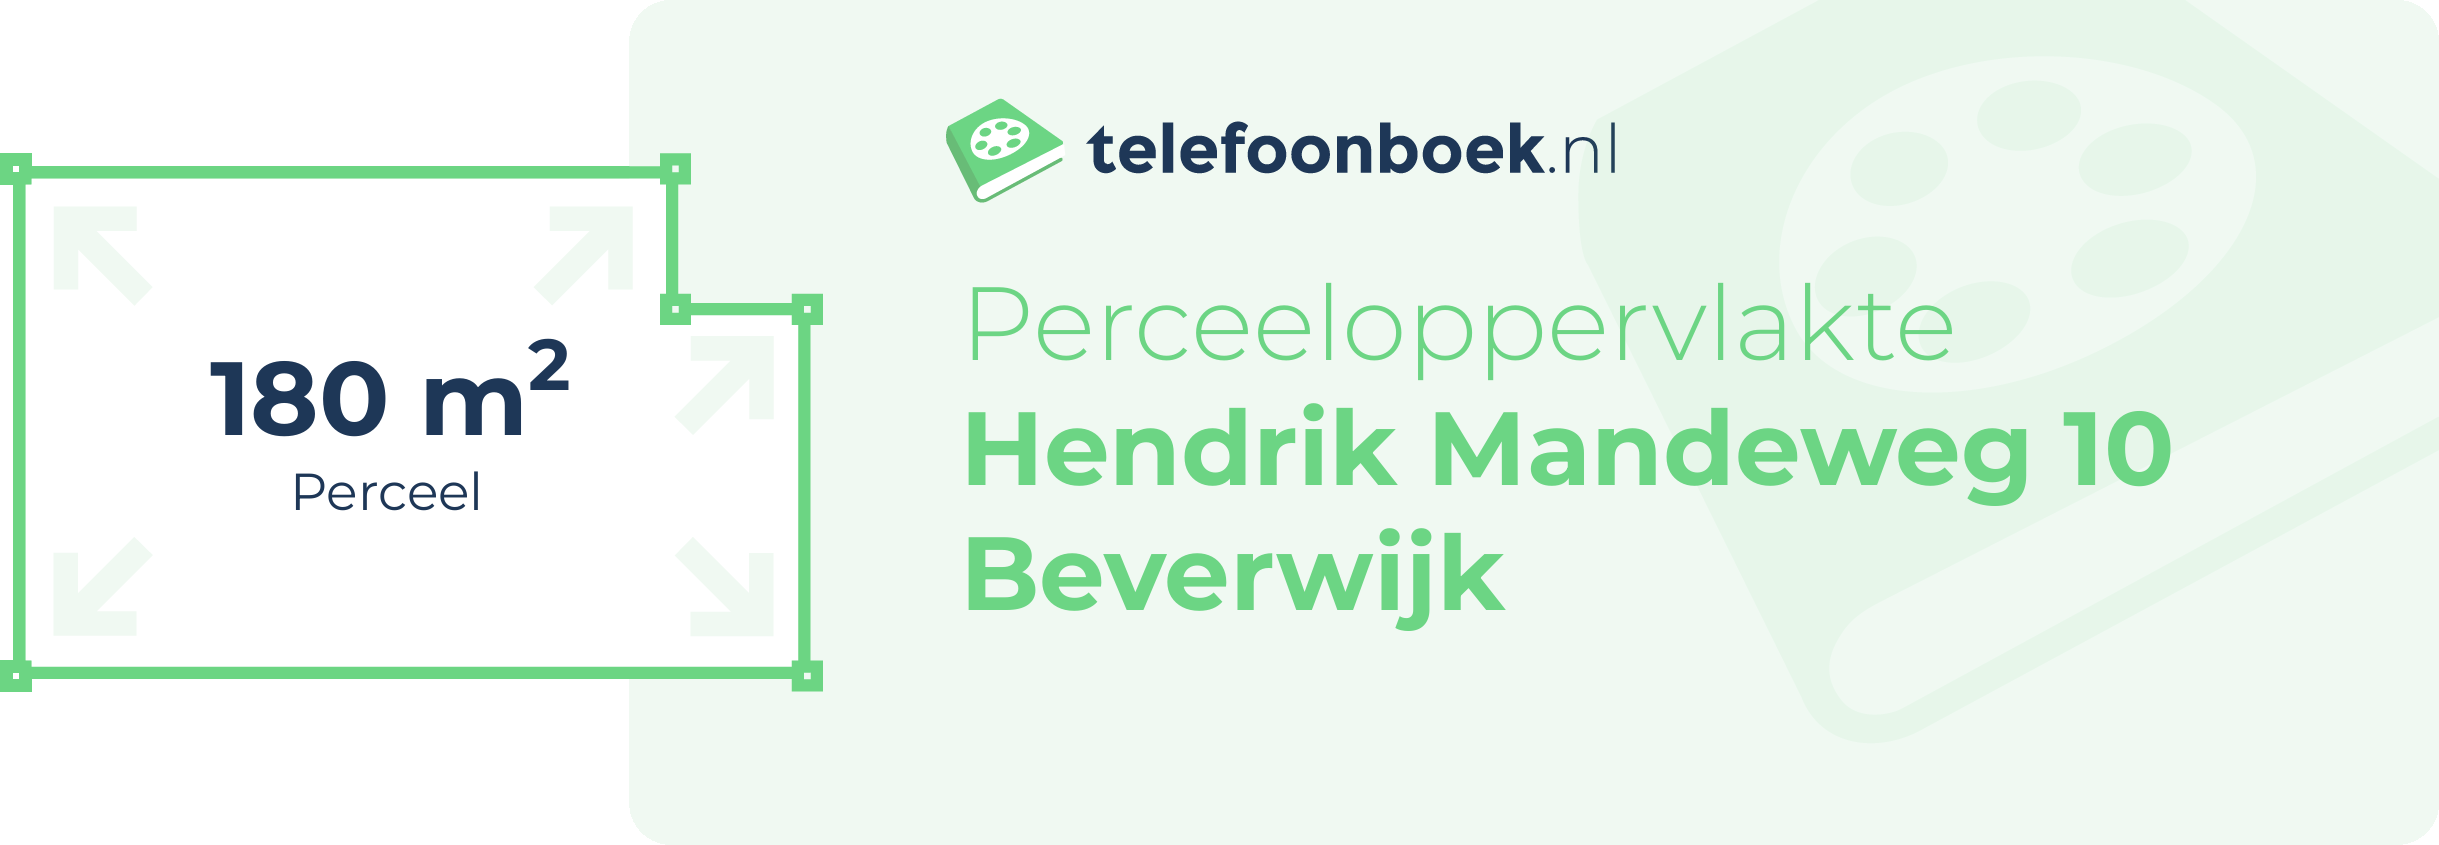 Perceeloppervlakte Hendrik Mandeweg 10 Beverwijk